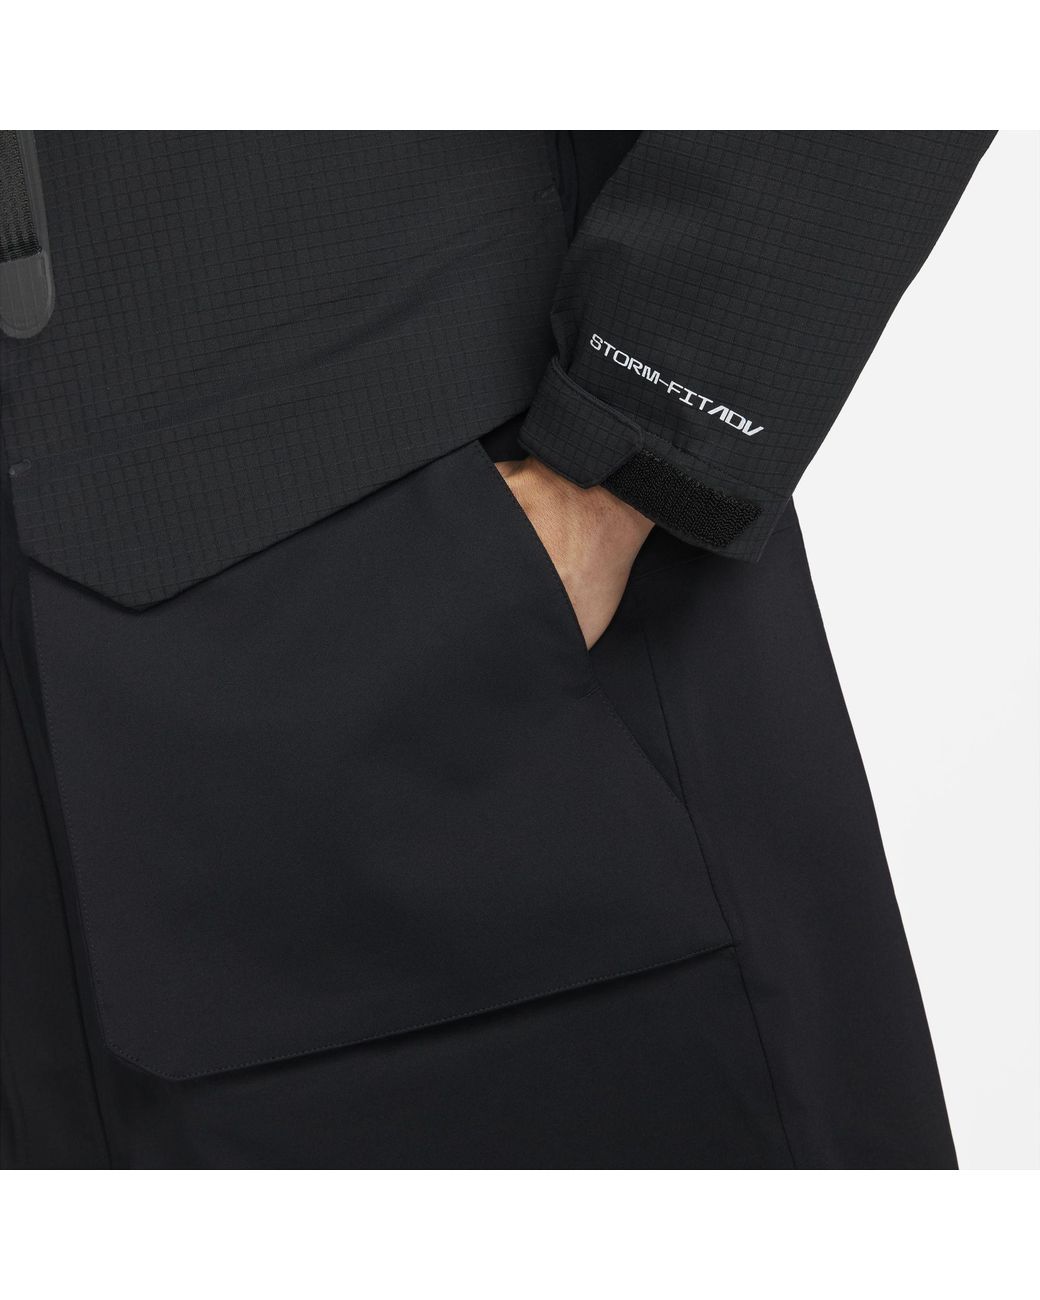 Nike Sportswear Storm-fit Adv Tech Pack 3-in-1 Parka in Black for Men |  Lyst Australia